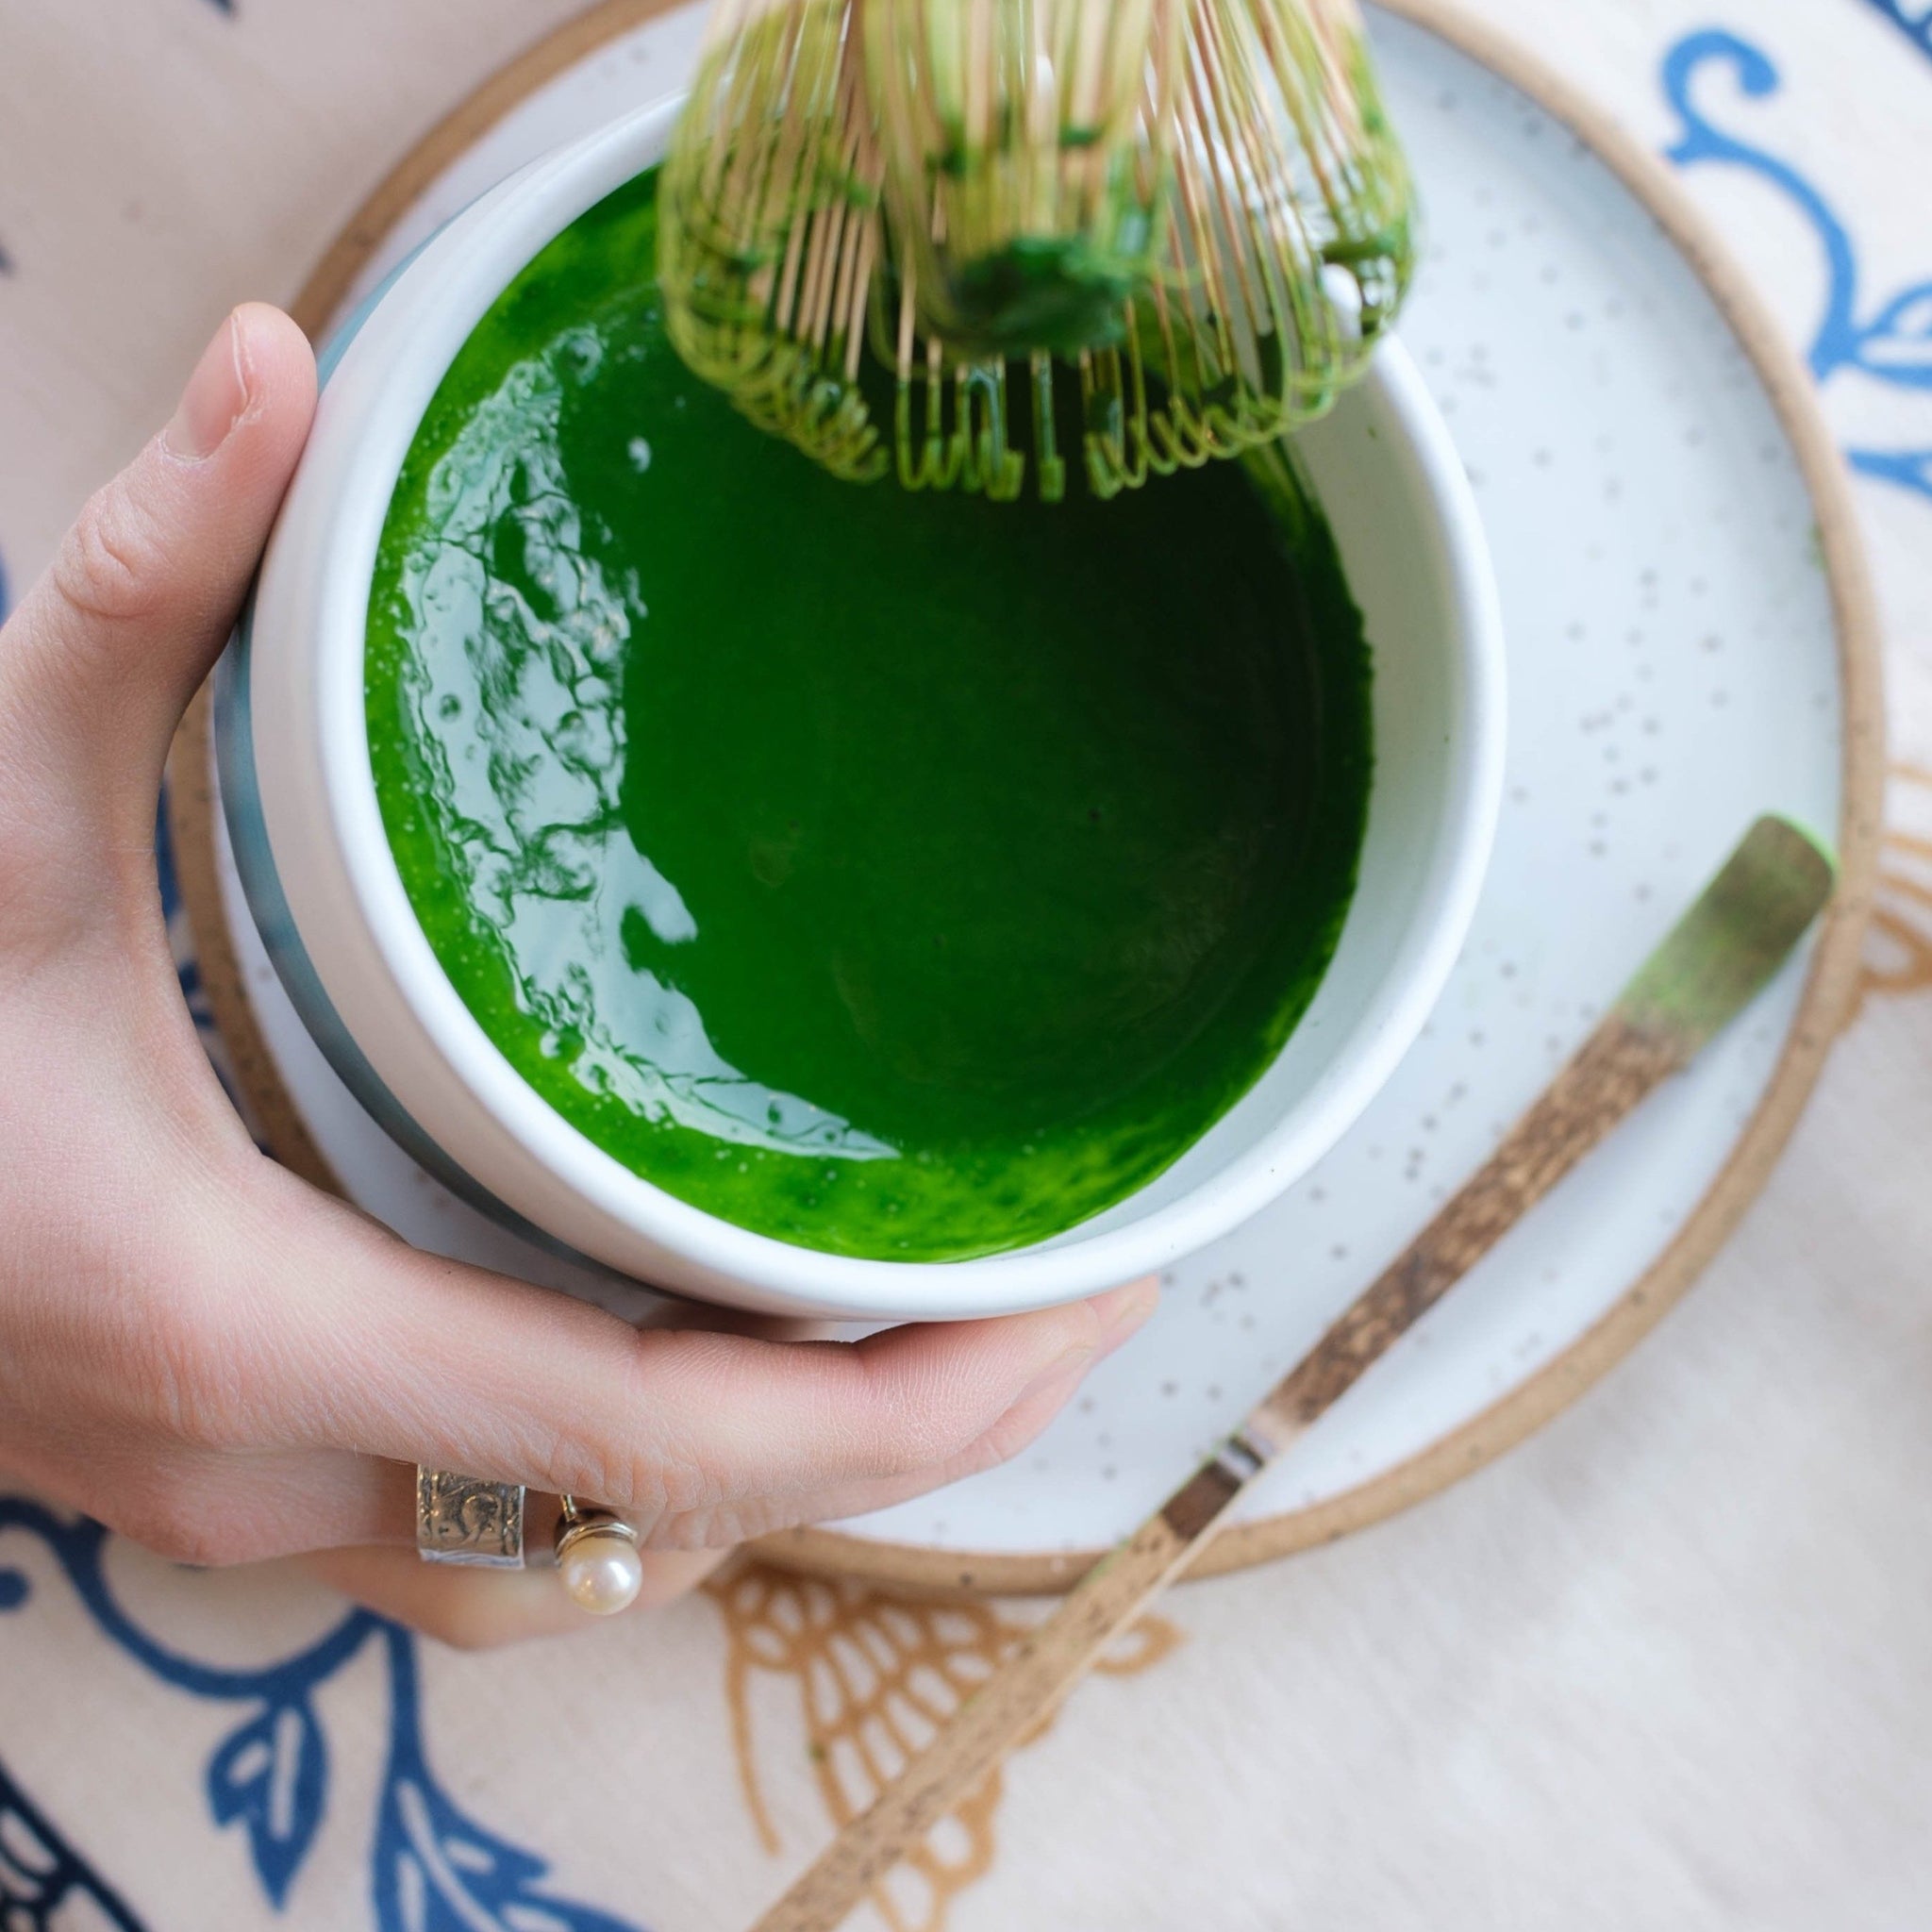 MIZUTAMA Dobin (Teapot: 550ml) - JAPANESE GREEN TEA